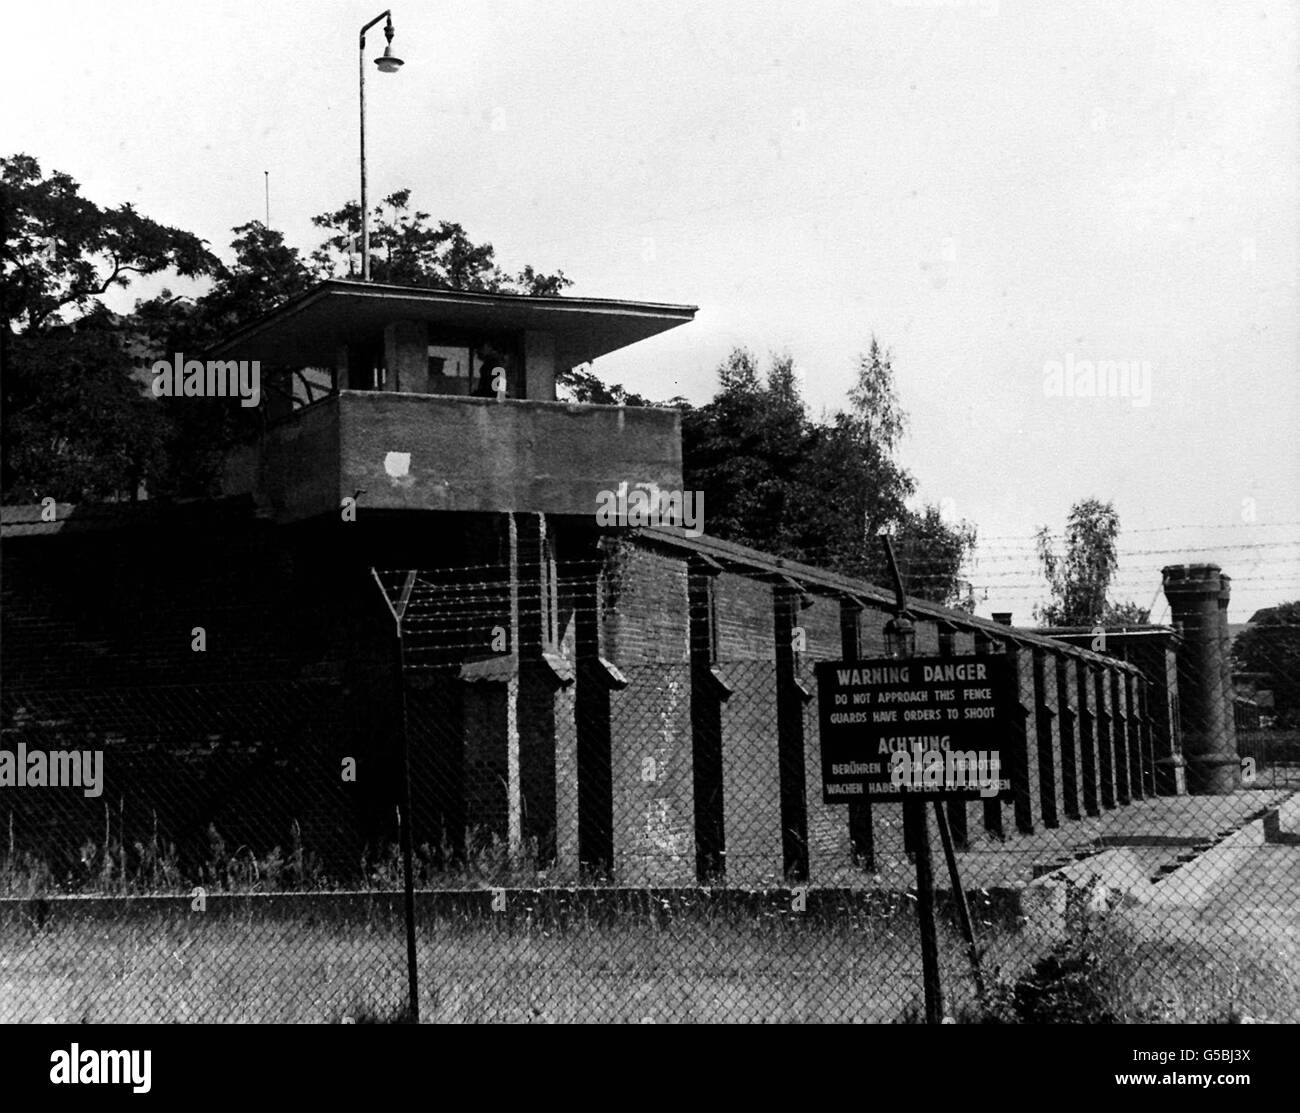 GEFÄNGNIS SPANDAU 1984: Einer der sechs Wachtürme, die um das Gefängnis Spandau im britischen West-Berliner Sektor angeordnet sind. Das Gefängnis beherbergt Adolf Hitlers ehemaligen Stellvertreter Rudolf Hess. Stockfoto